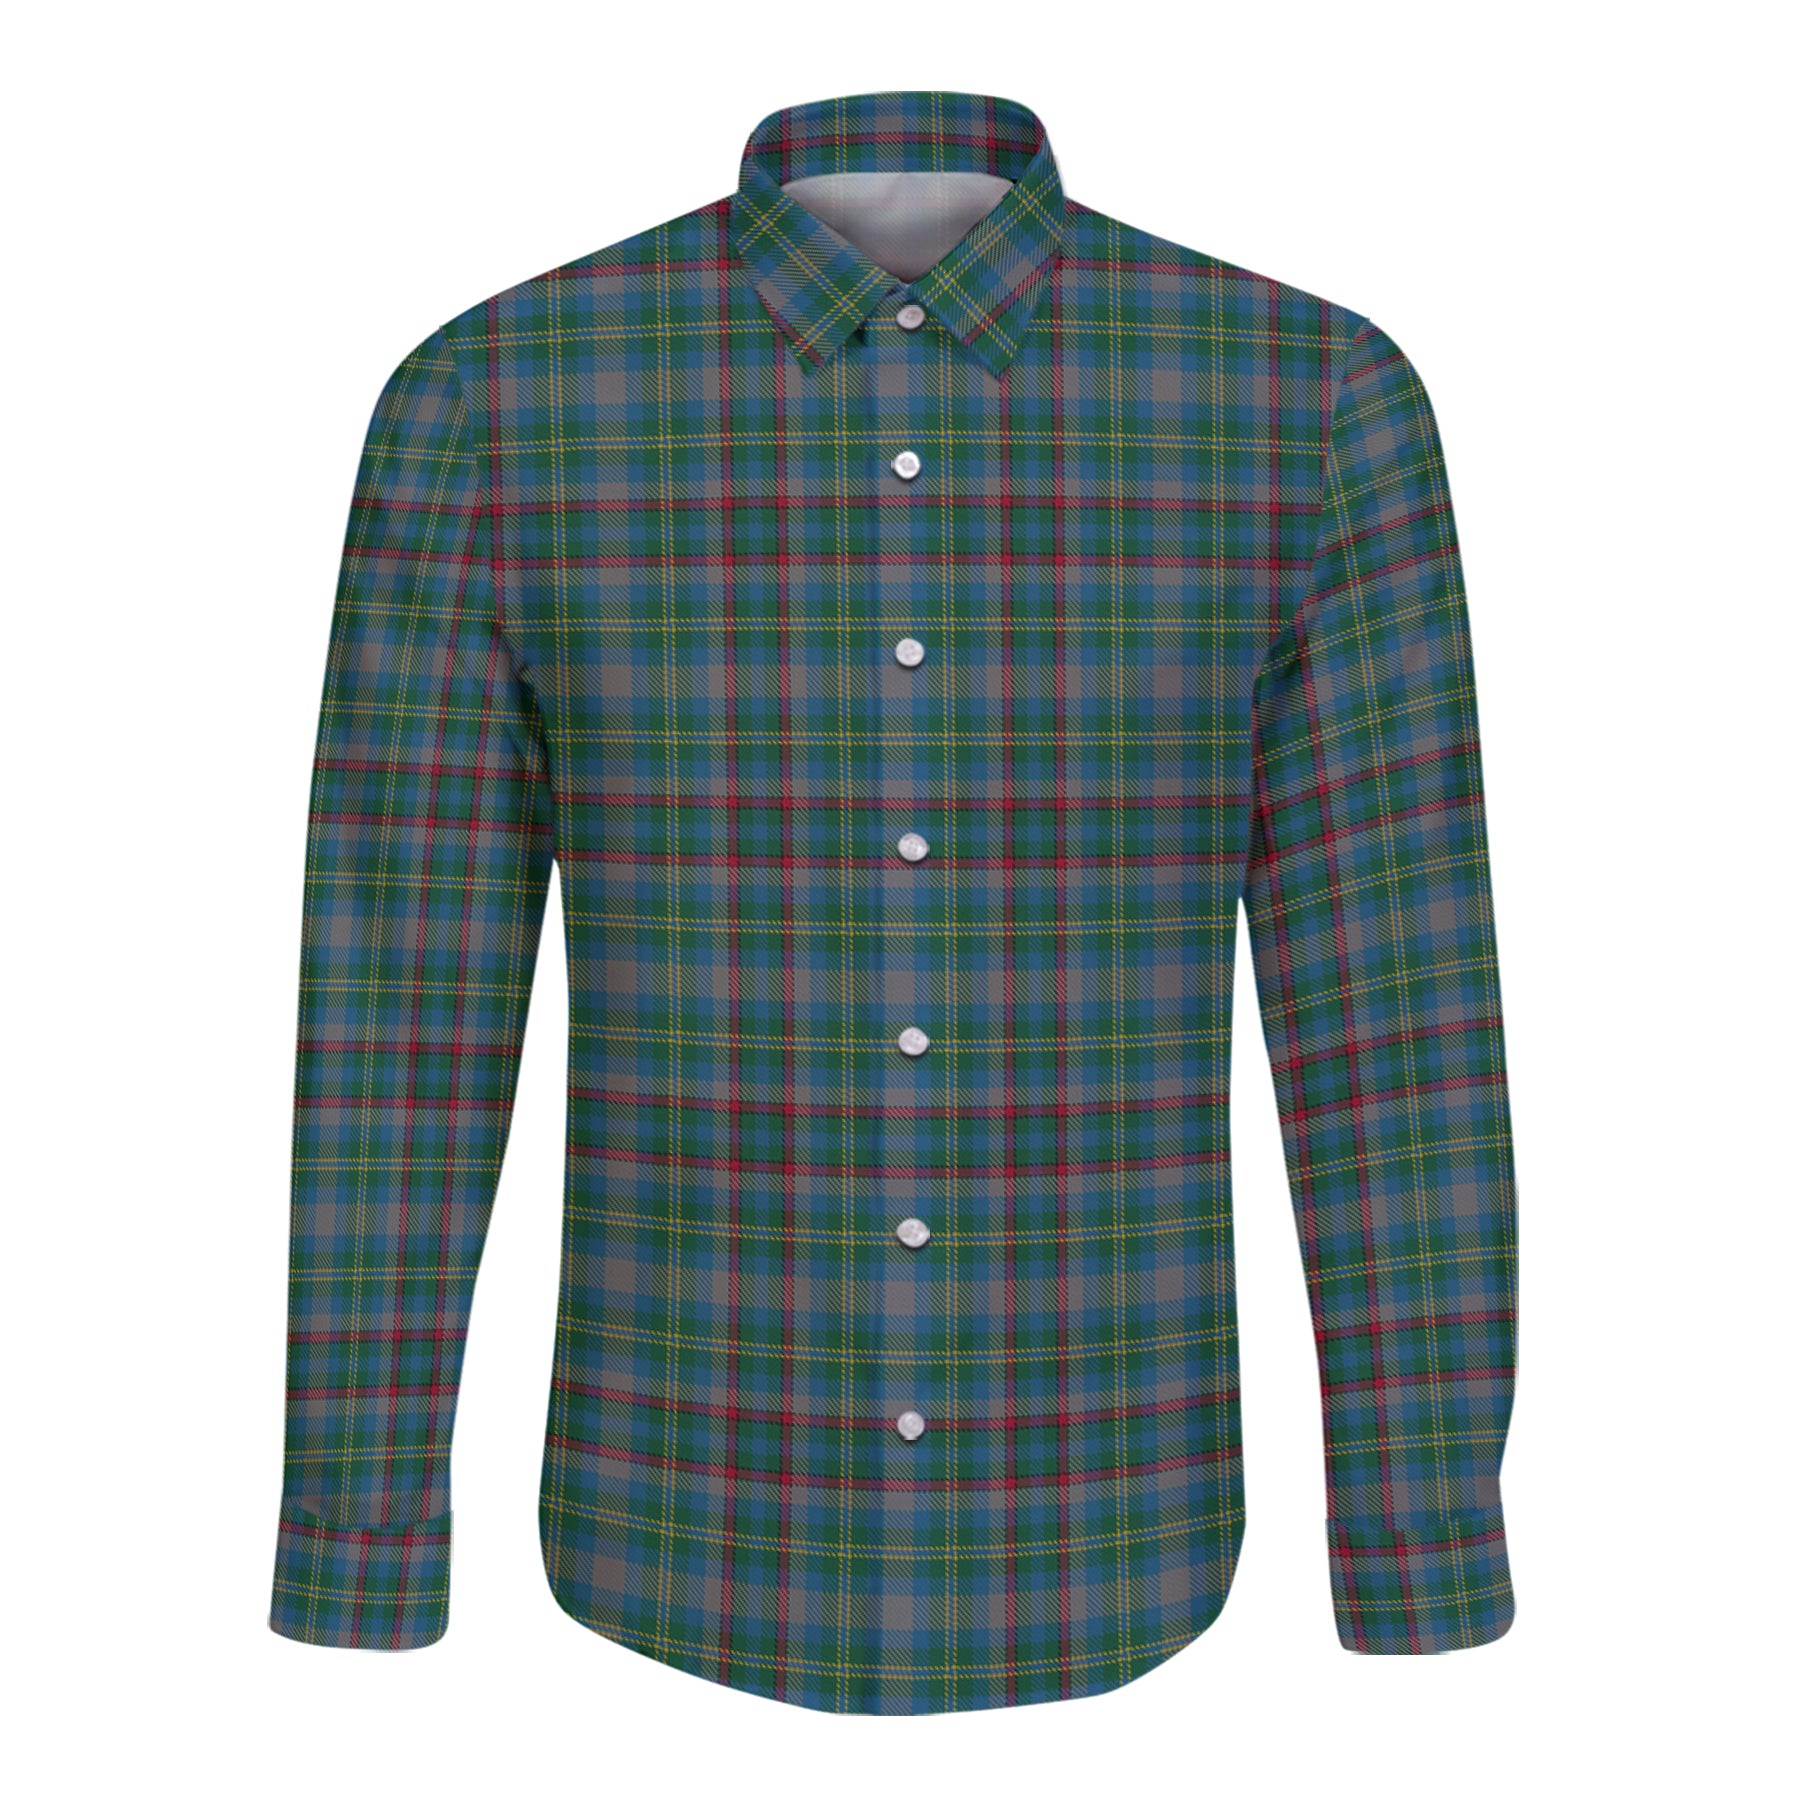 Penman Tartan Long Sleeve Button Up Shirt K23